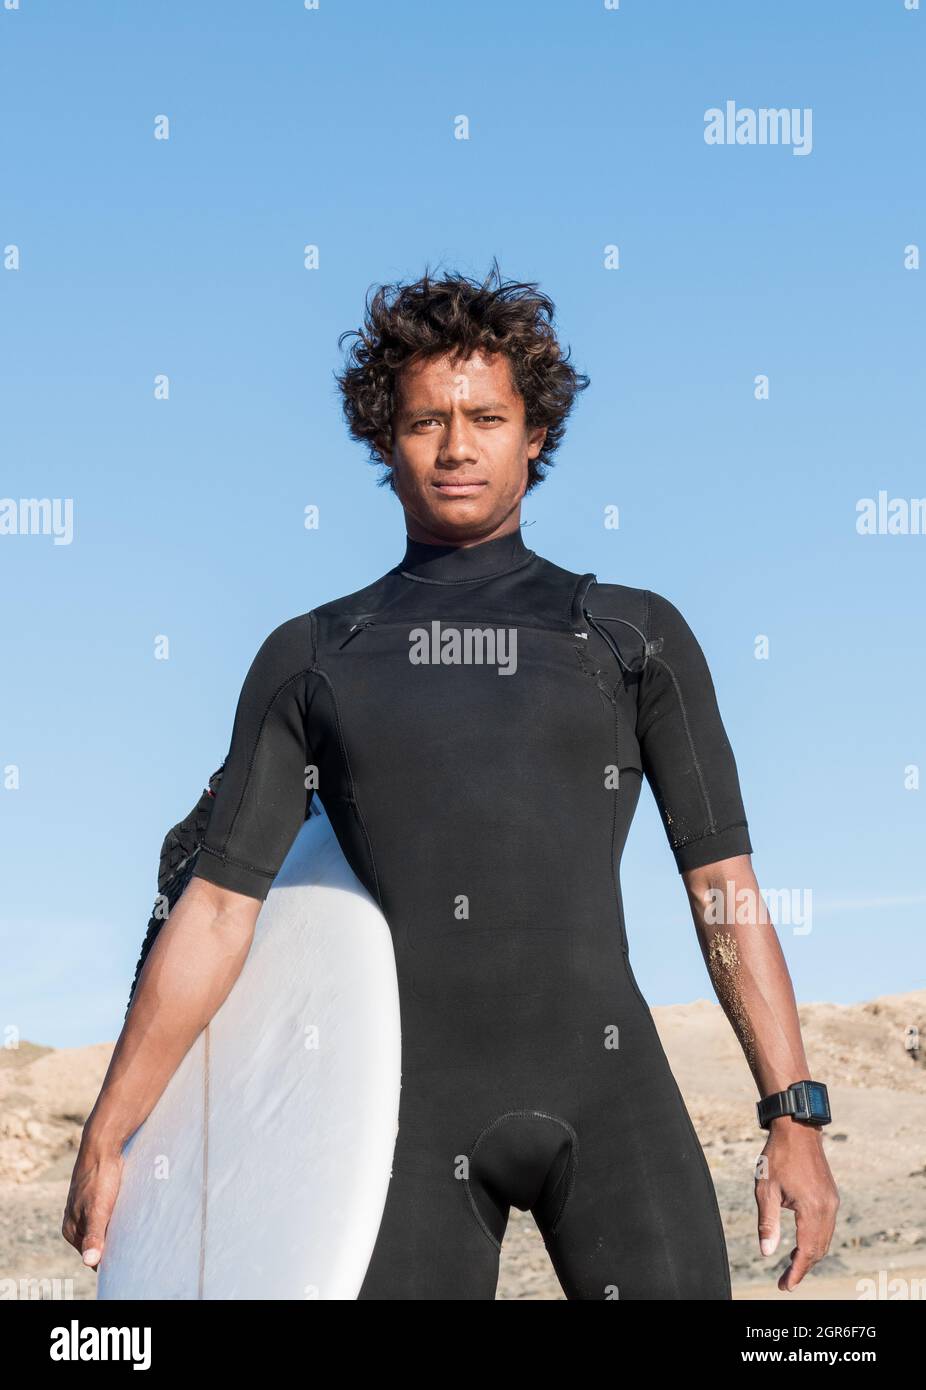 Junge afrikanische madagassische sportliche Surferportrait mit Surfbrett in kurzem schwarzen Neoprenanzug Stockfoto